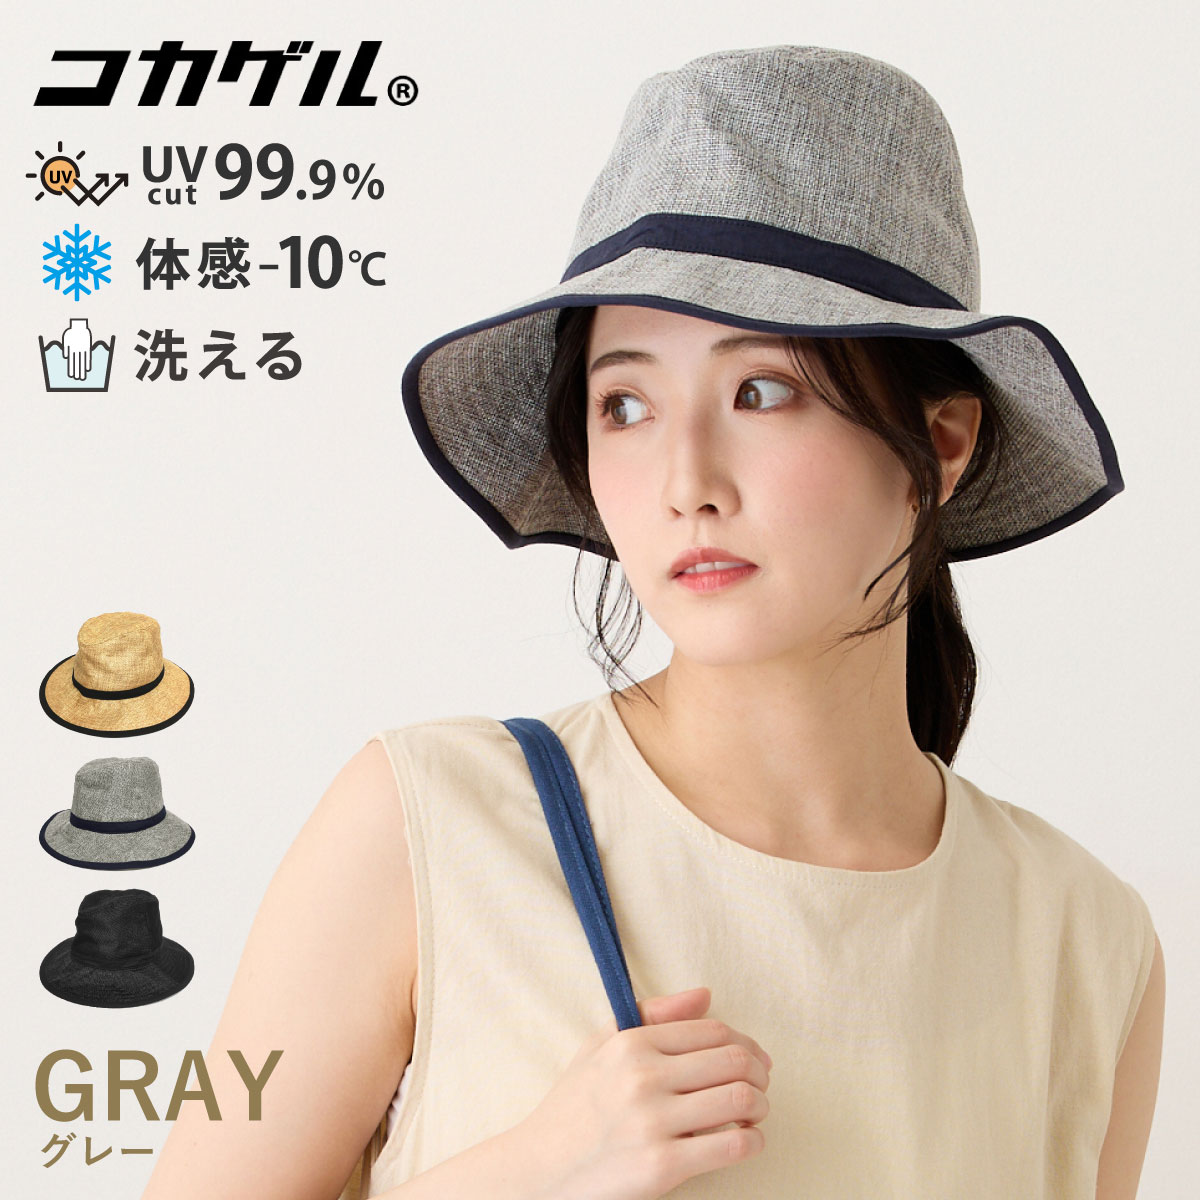 コカゲル ハット 体感マイナス10℃ 大きい帽子 59cm 高機能 UV99.9%カット 遮熱 hat-1443 つば広 帽子 レディース 春夏  日傘帽 暑さ対策